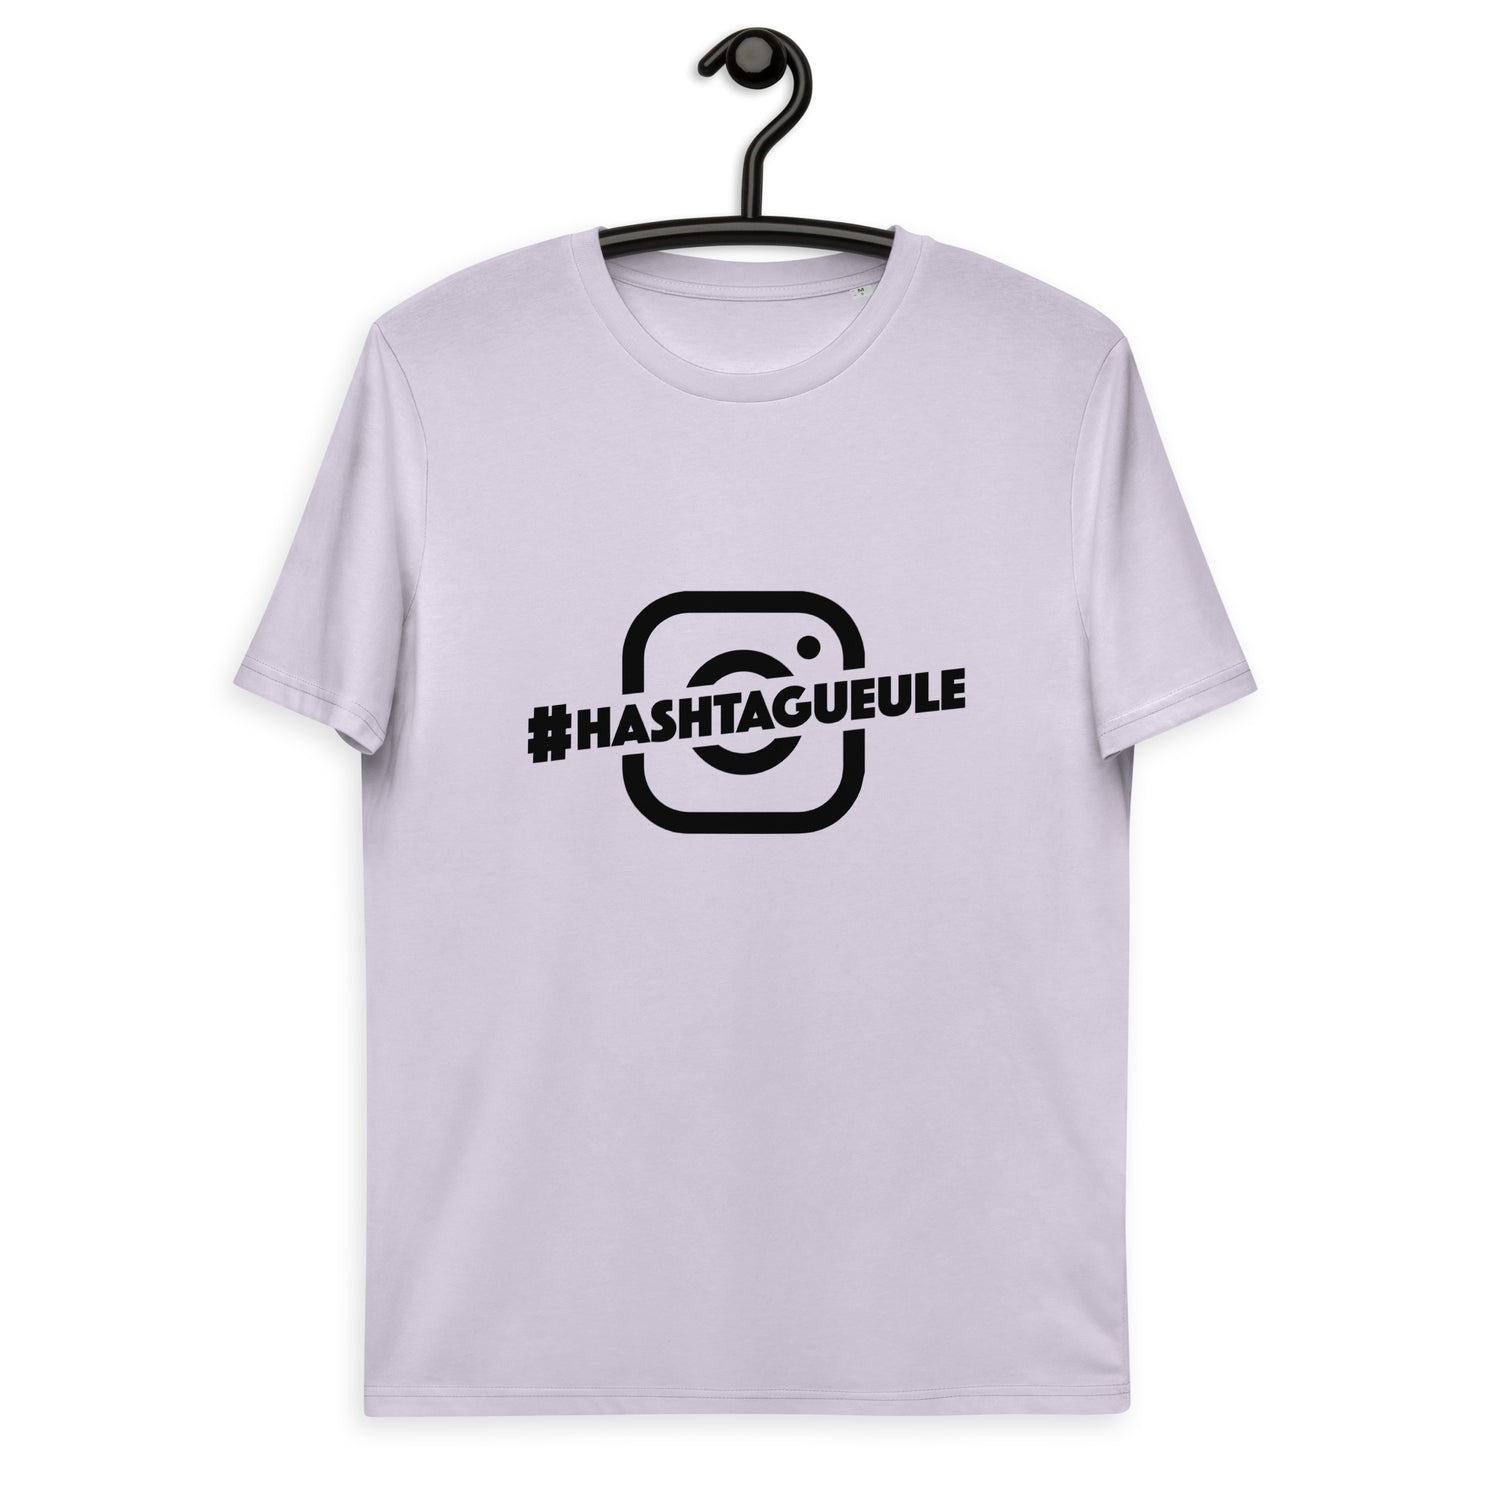 Hashtagueule - T-shirt unisexe en coton biologique